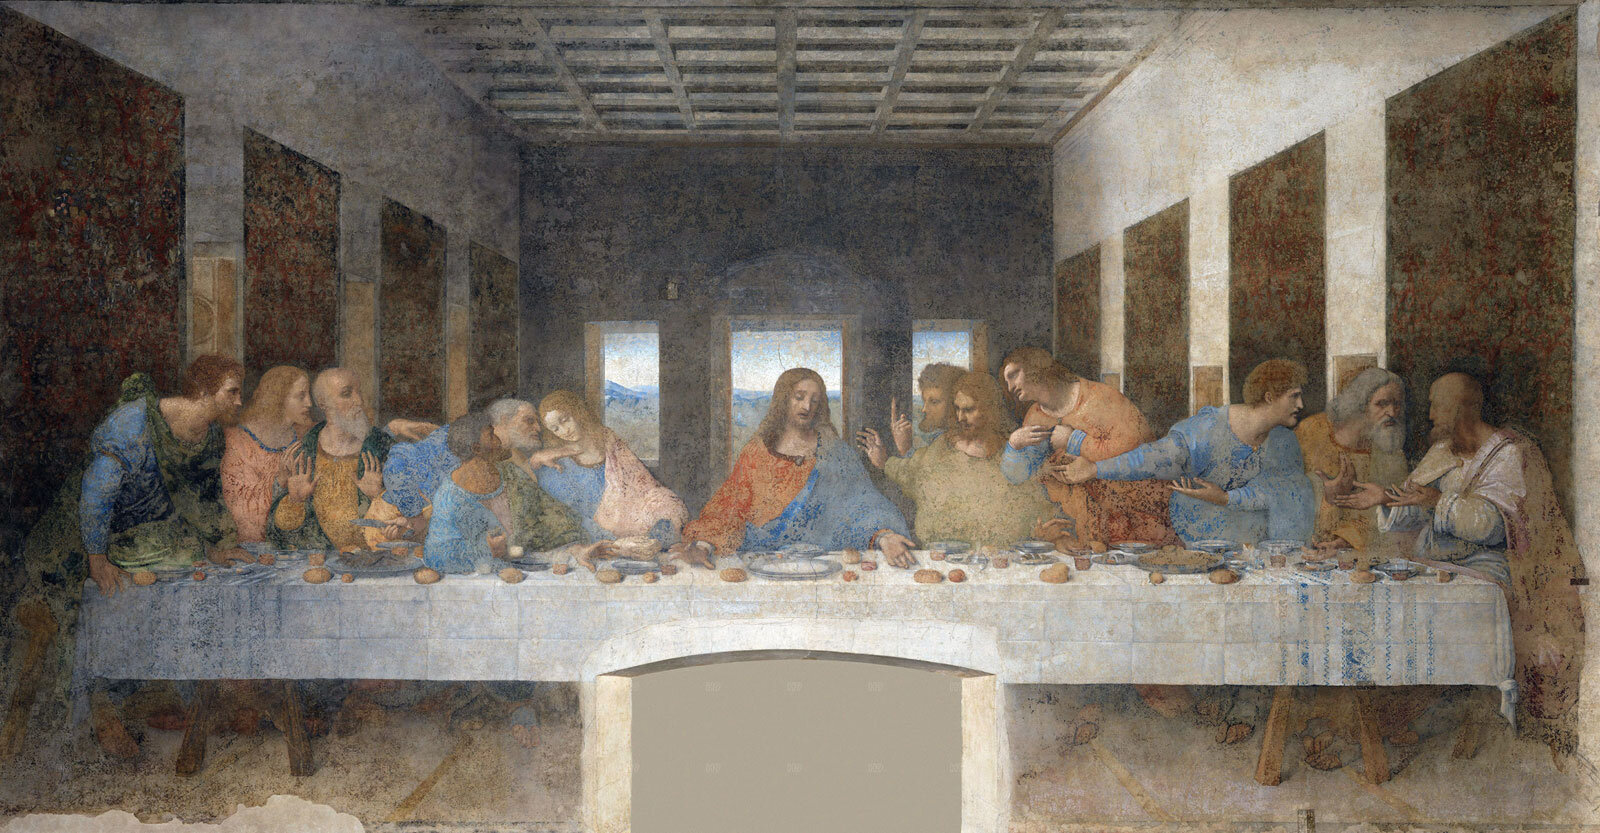 Last-Supper-wall-painting-restoration-Leonardo-da-1999.jpg